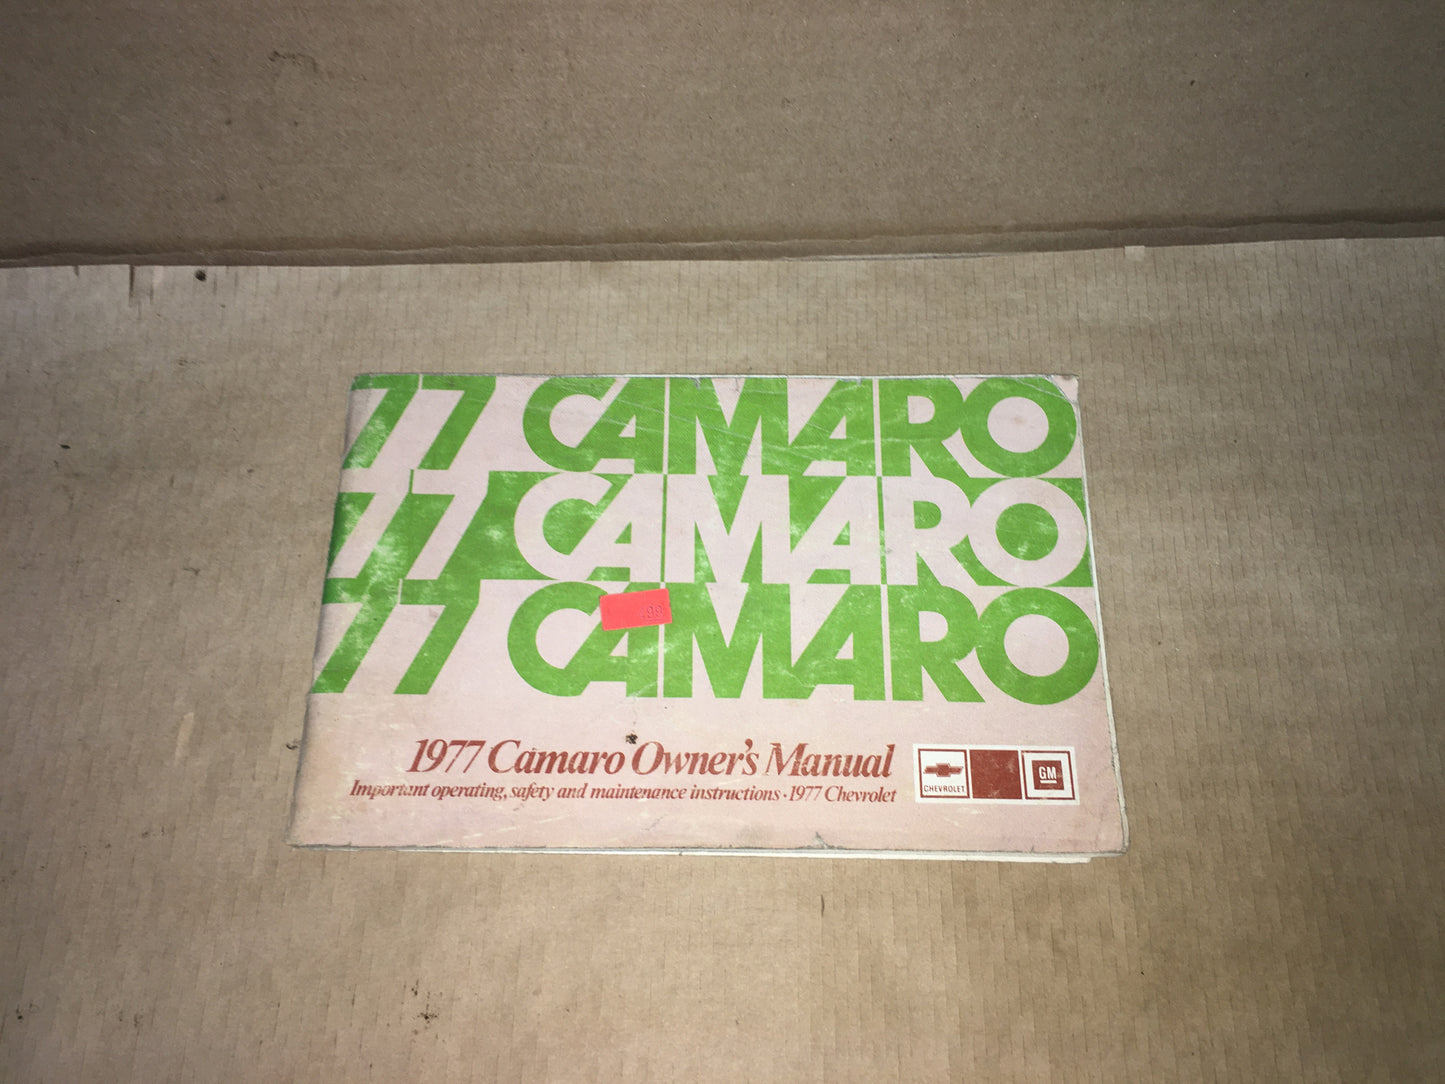 1977 Camaro Owner's Manual